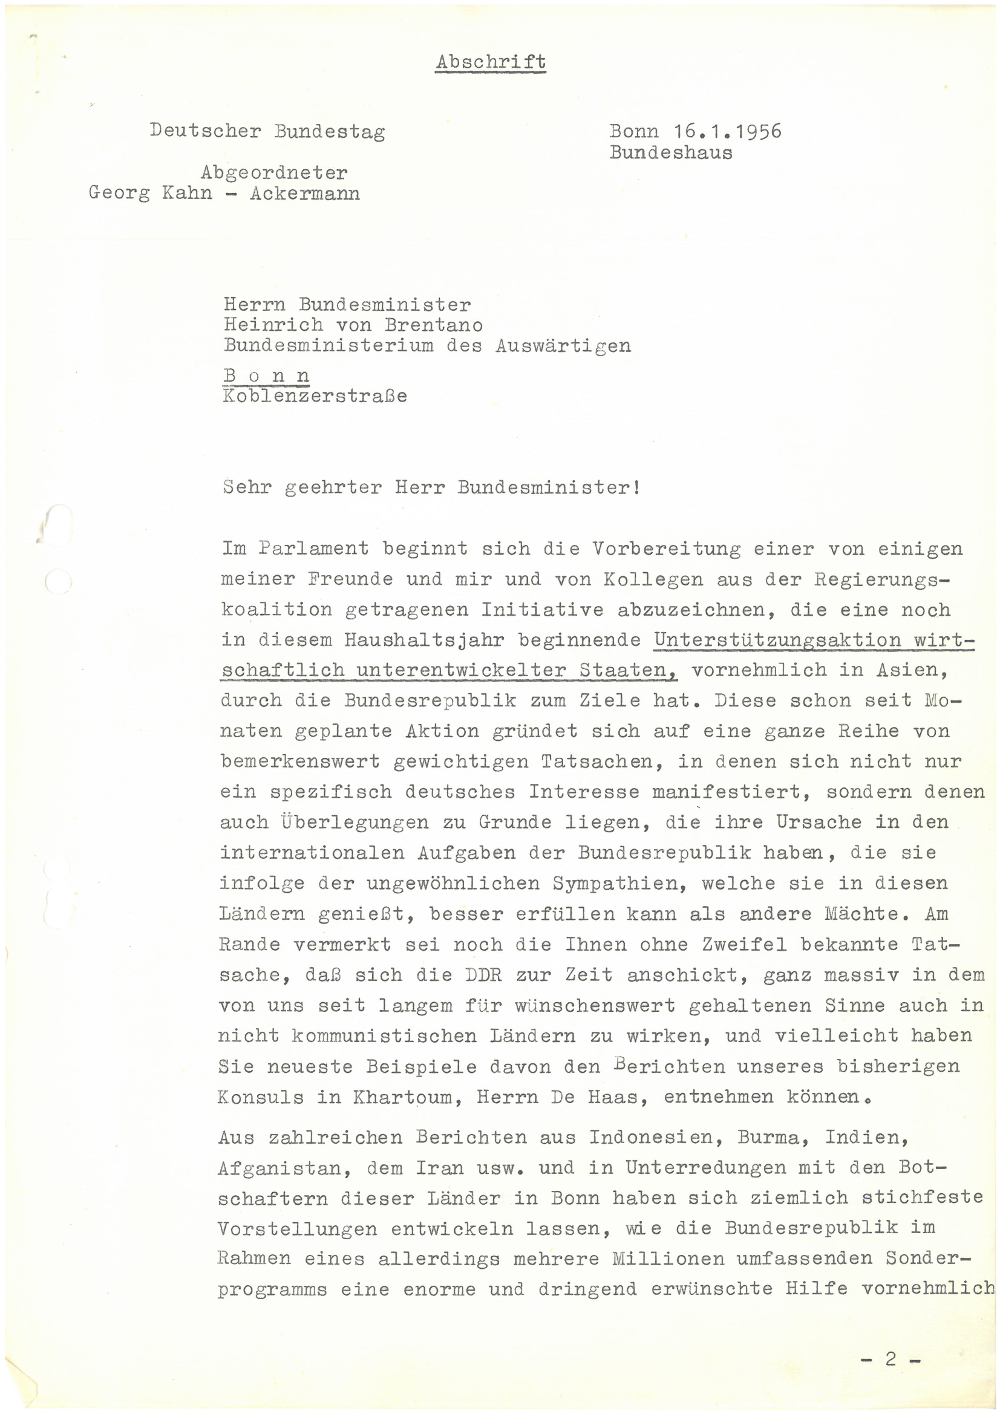 Schreiben von Georg Kahn-Ackermann an Außenminister von Brentano vom 16.01.1956 über eine Initiative einiger Abgeordneter der Regierungskoalition zur Unterstützung unterentwickelter Staaten.